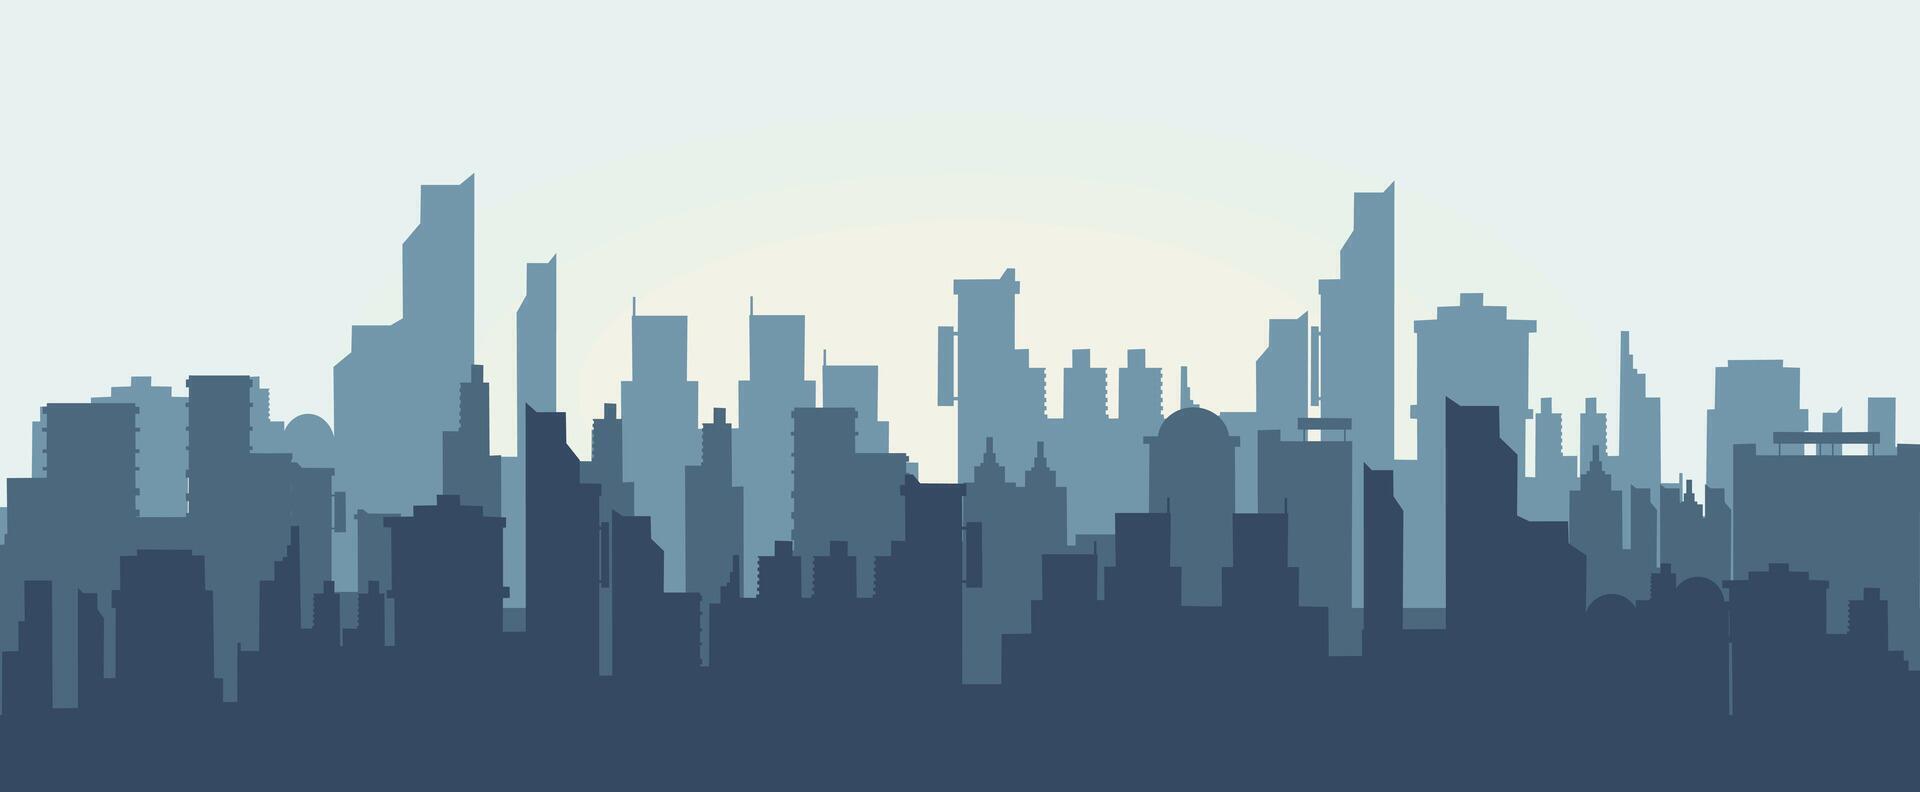 Silhouette von das stadt.modern Stadt Landschaft Banner Vektor Illustration Vektor